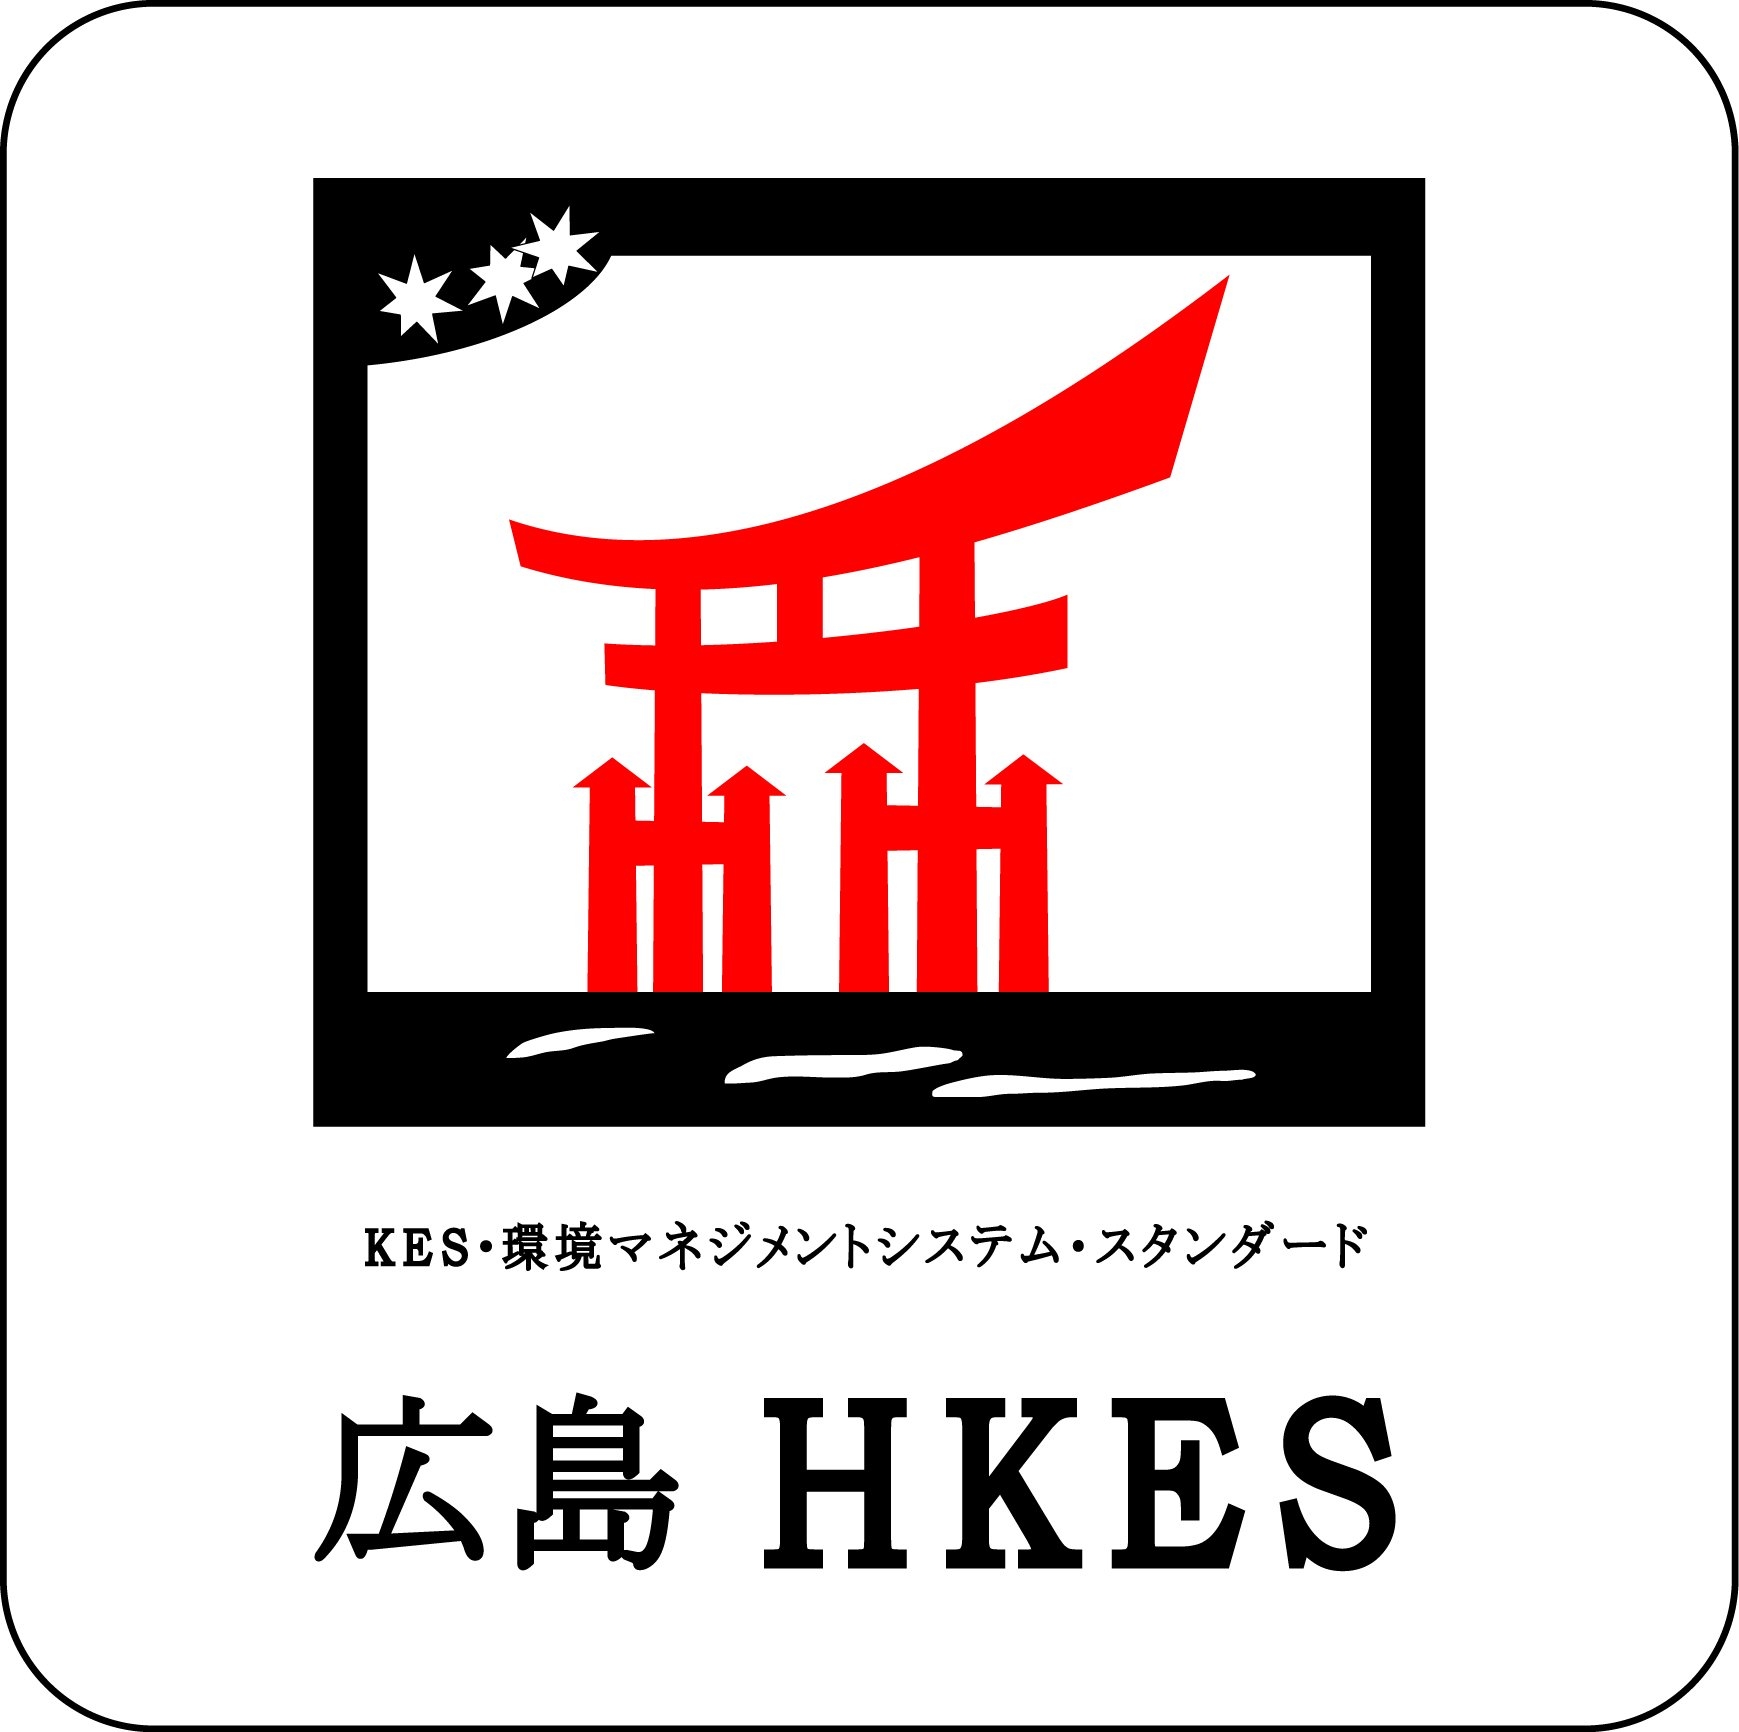 HKES-Logo